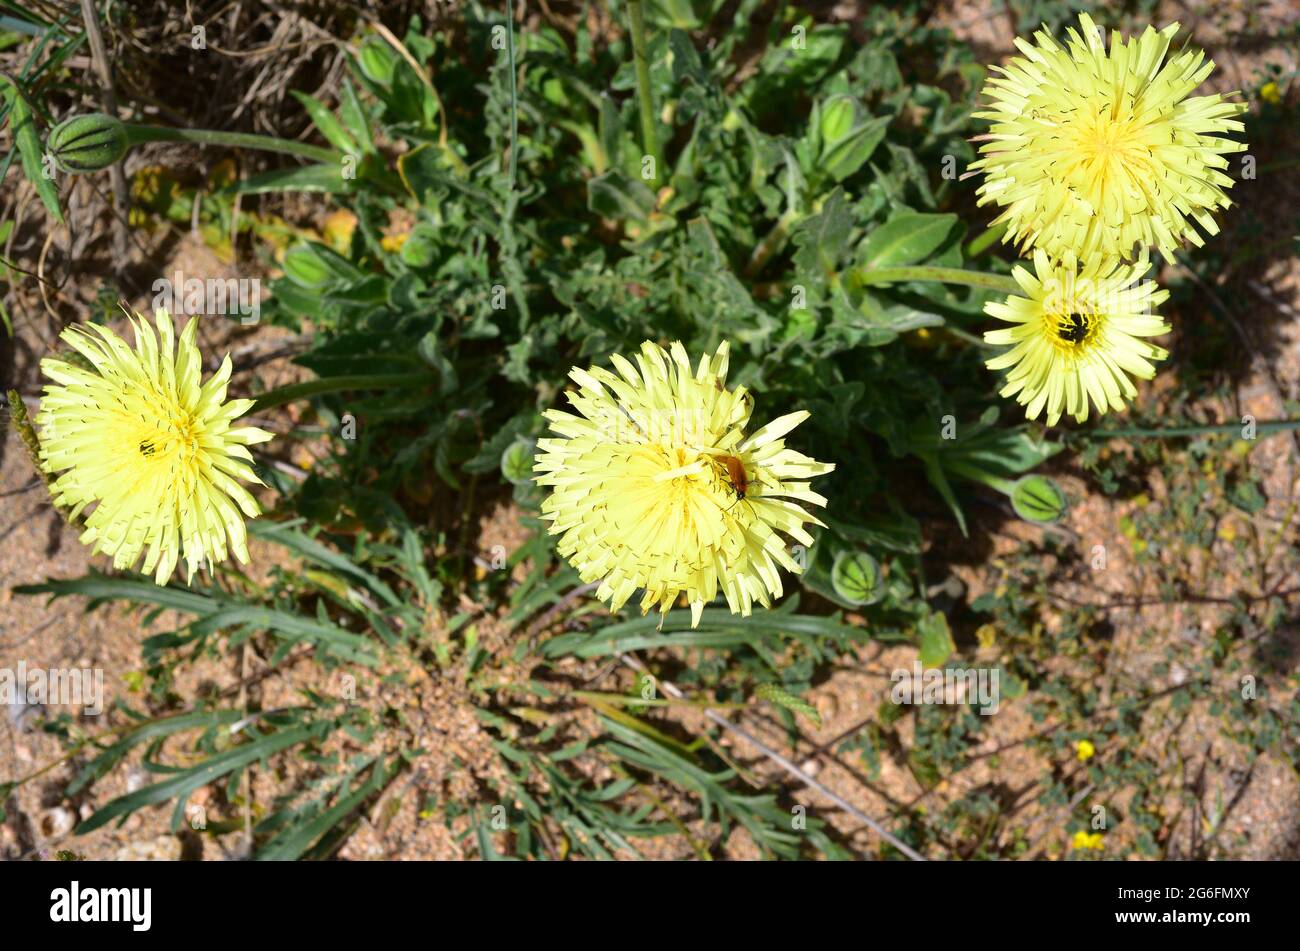 El vellón dorado liso (Urospermum dalecampii) es una hierba perenne nativa de la cuenca occidental y central del Mediterráneo. Esta foto fue tomada en Pals, Foto de stock